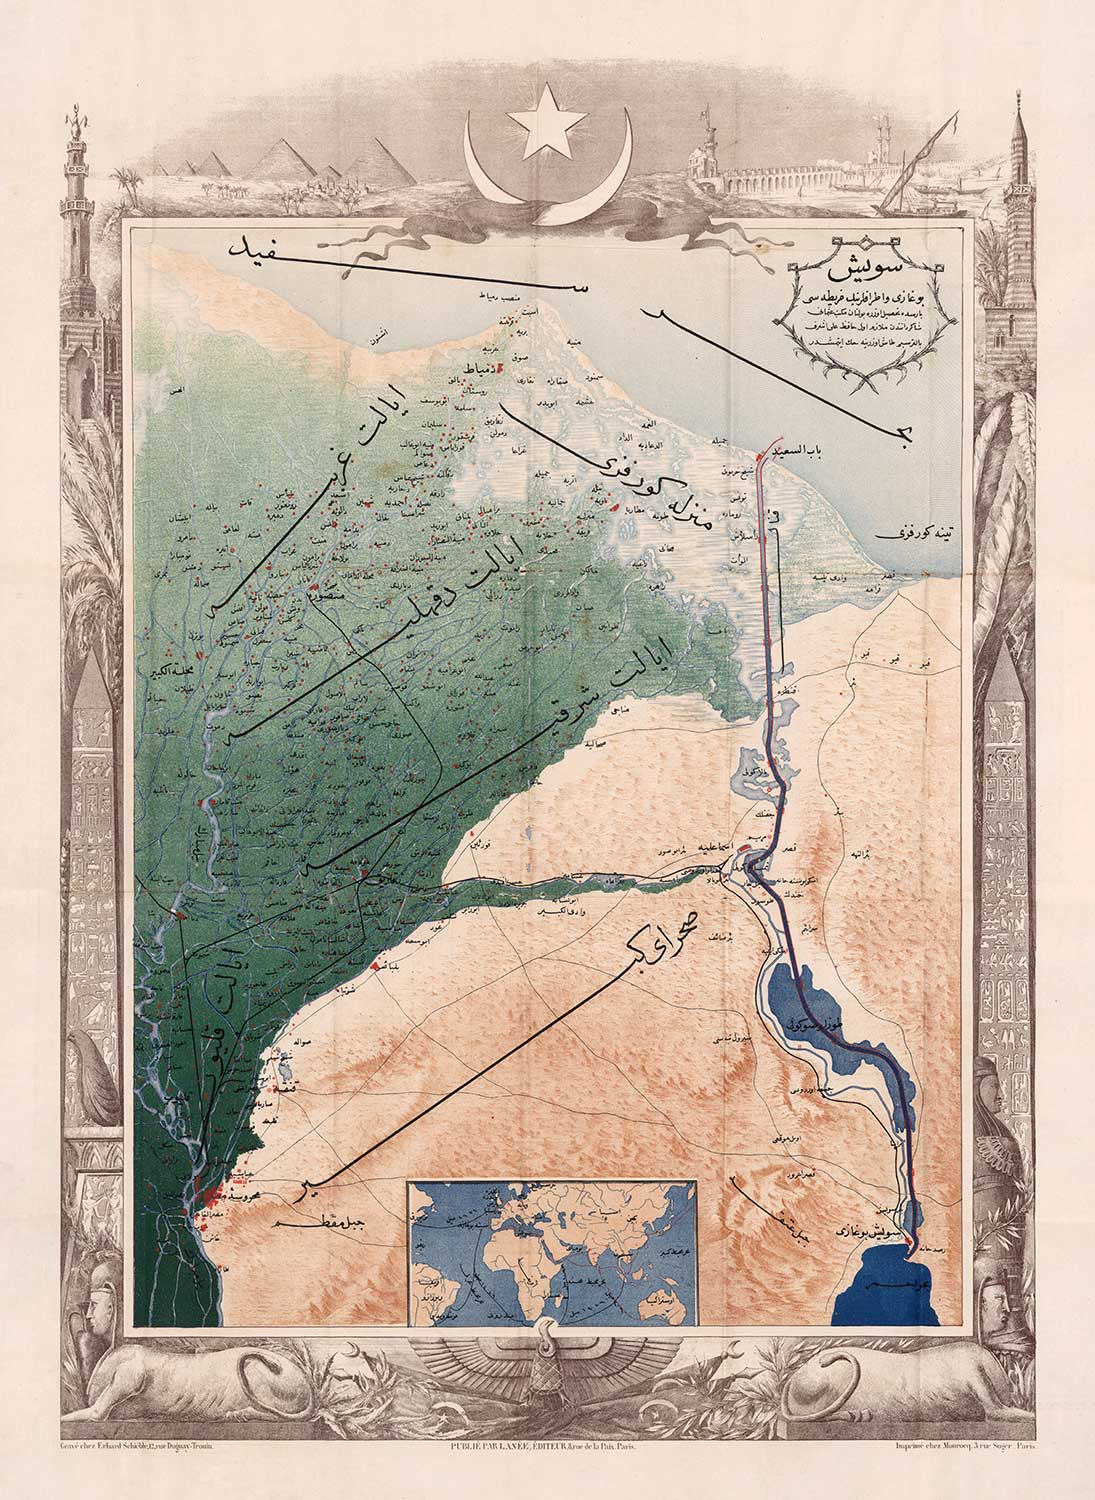 Antiguo mapa árabe del Canal de Suez por Erhard Schieble en 1869 - Río Nilo, El Cairo, Mar Mediterráneo, Mansoura